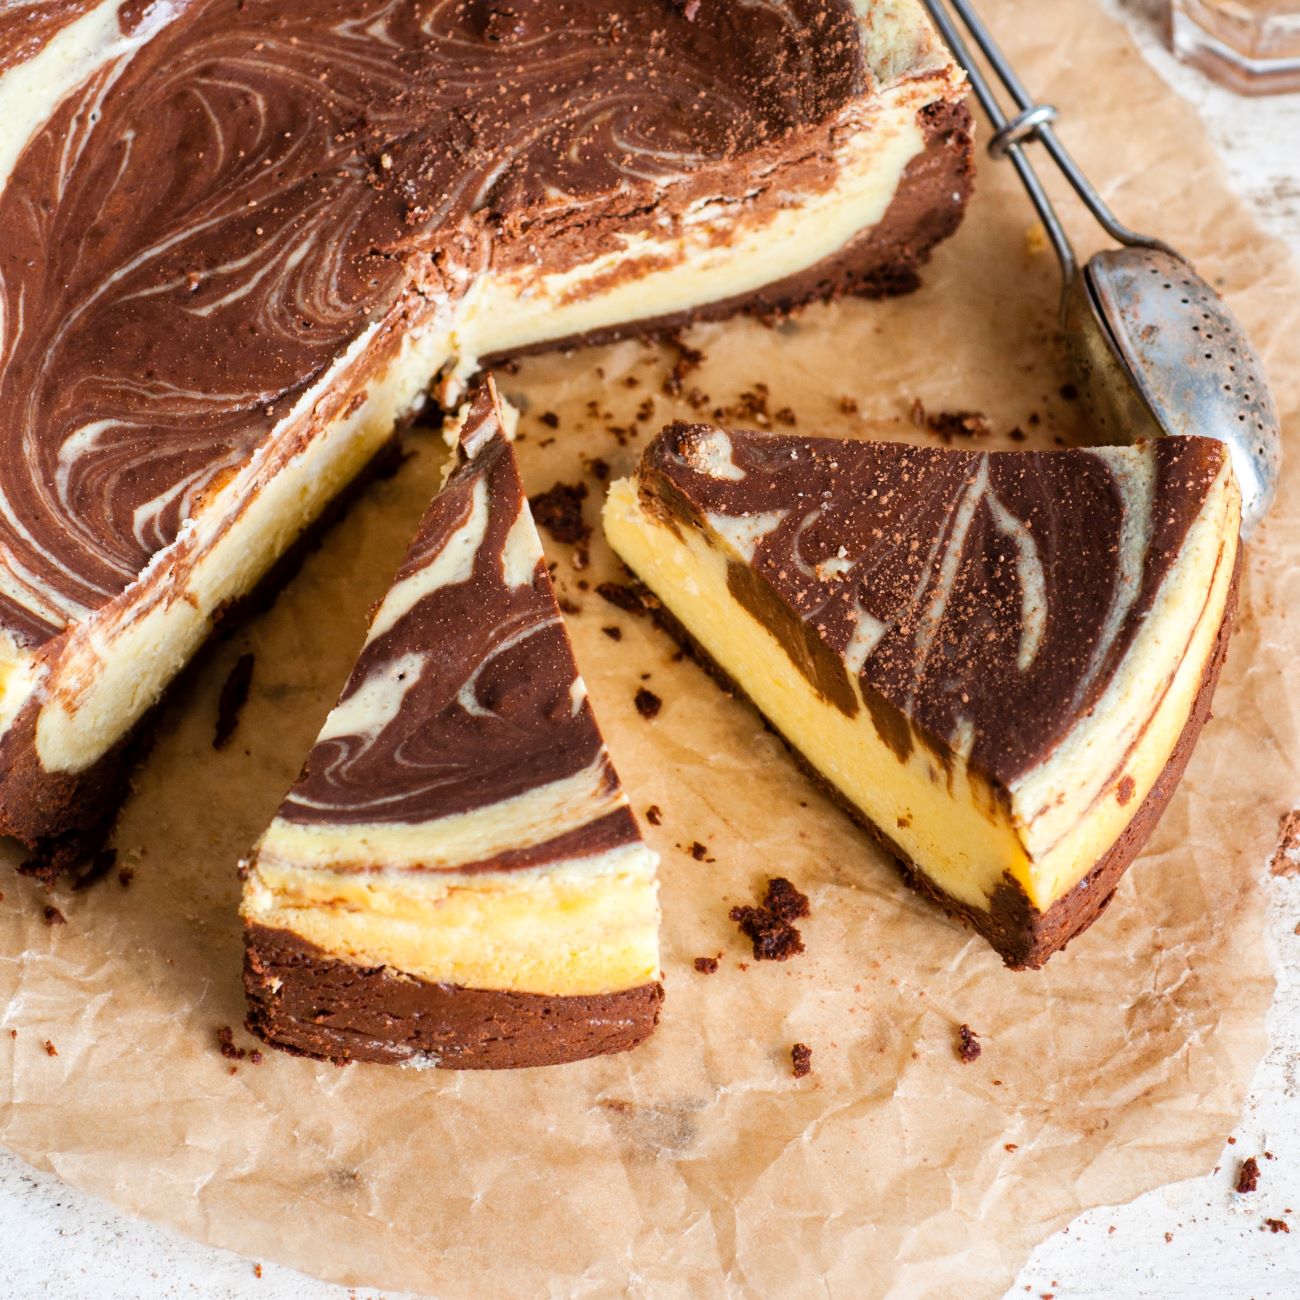 Mramorový cheesecake sa predkladá nakrájaný na papieri na pečenie.